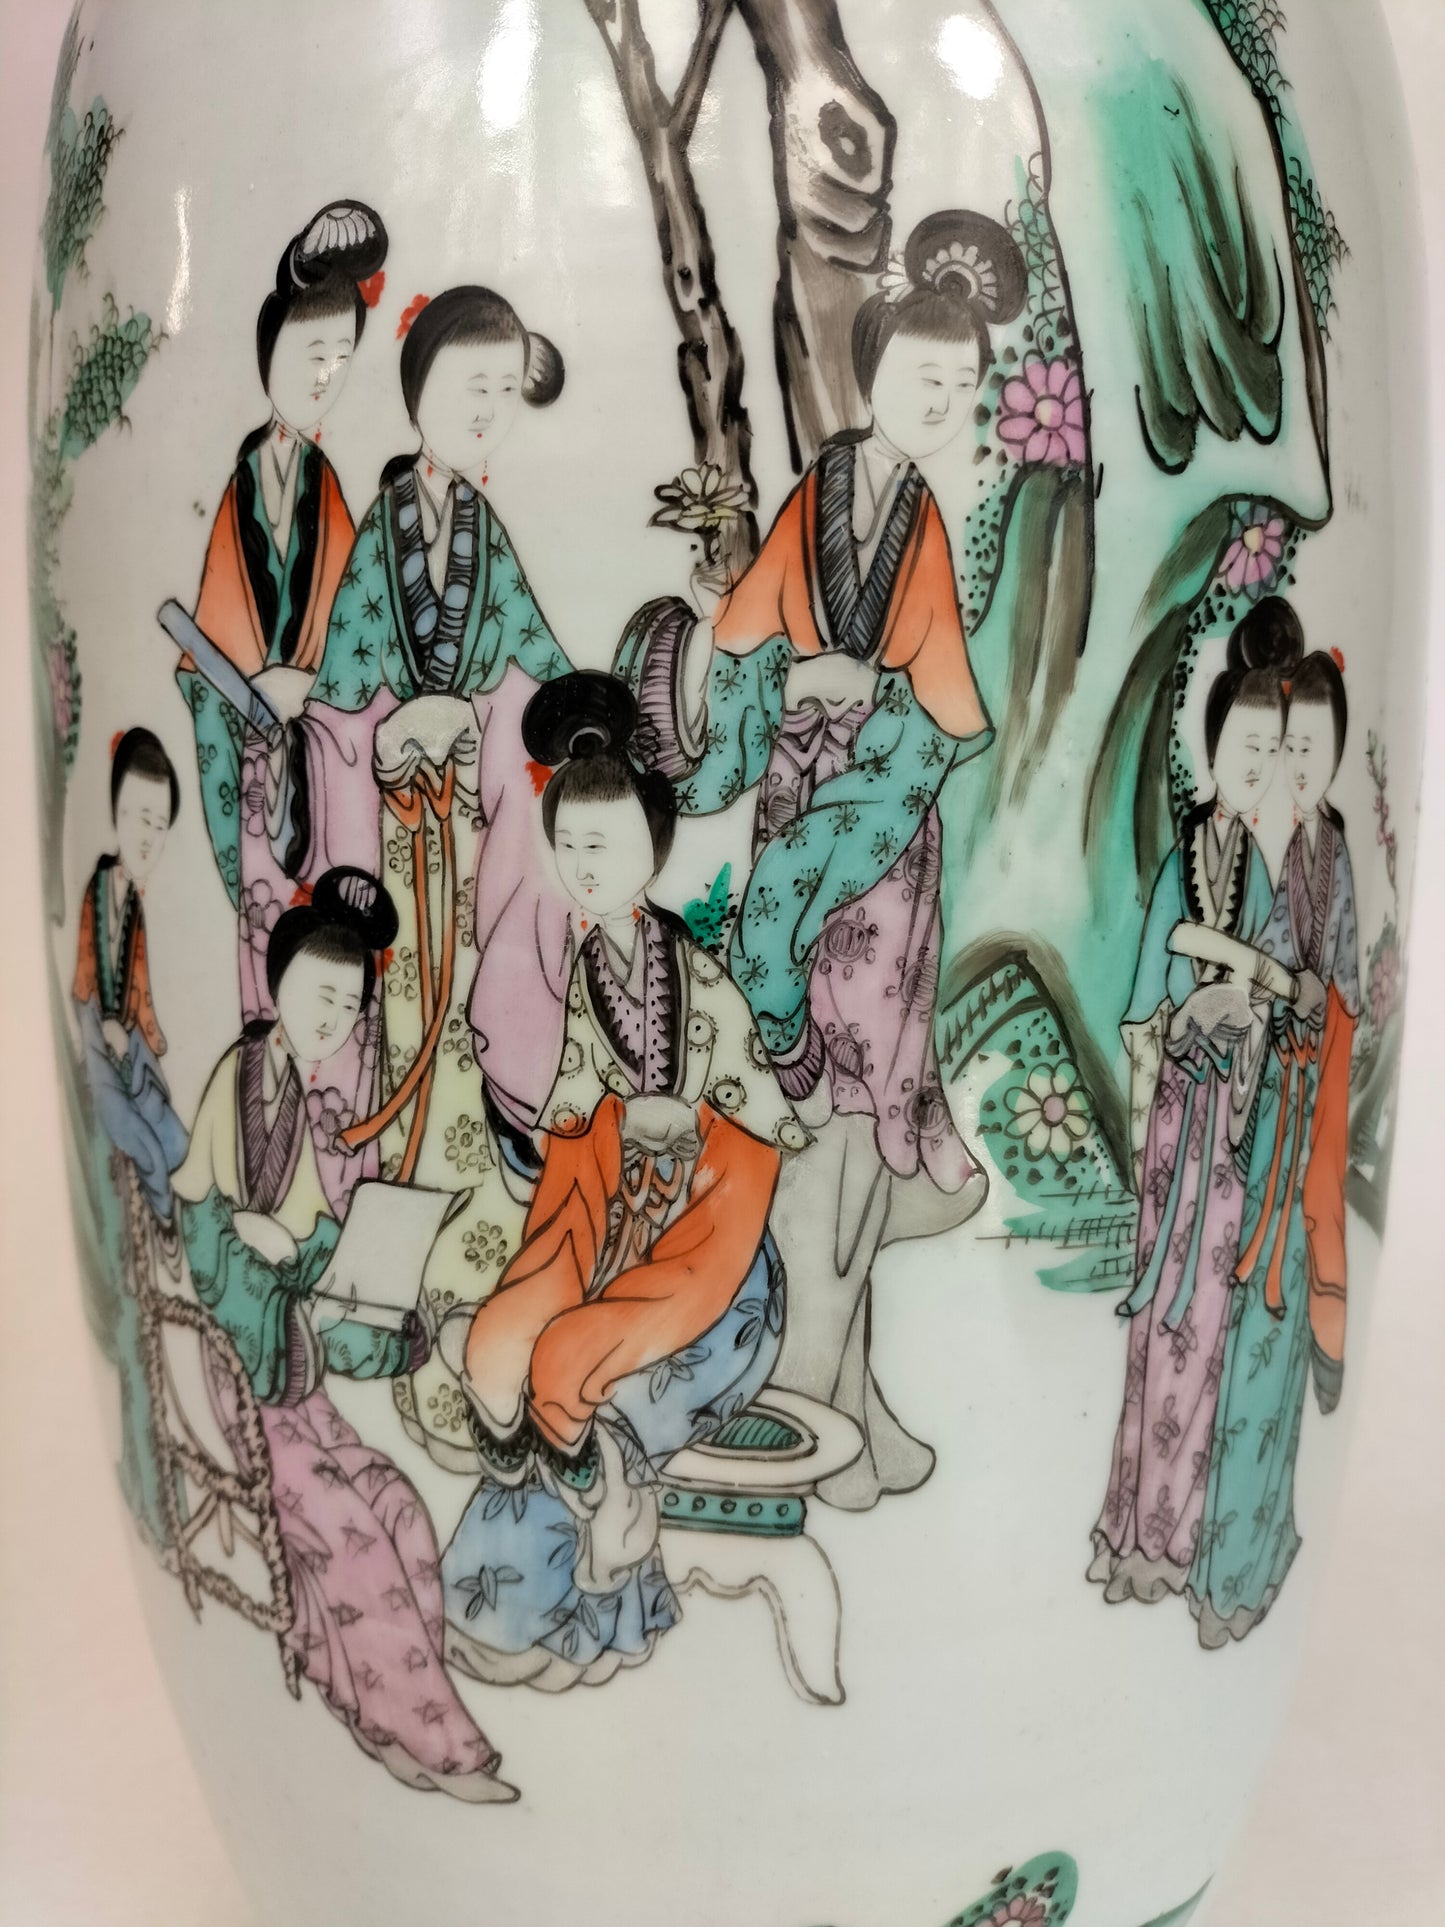 مزهرية تشيانجيانغ الصينية العتيقة الكبيرة المزينة بمنظر الحديقة // فترة الجمهورية (1912-1949)